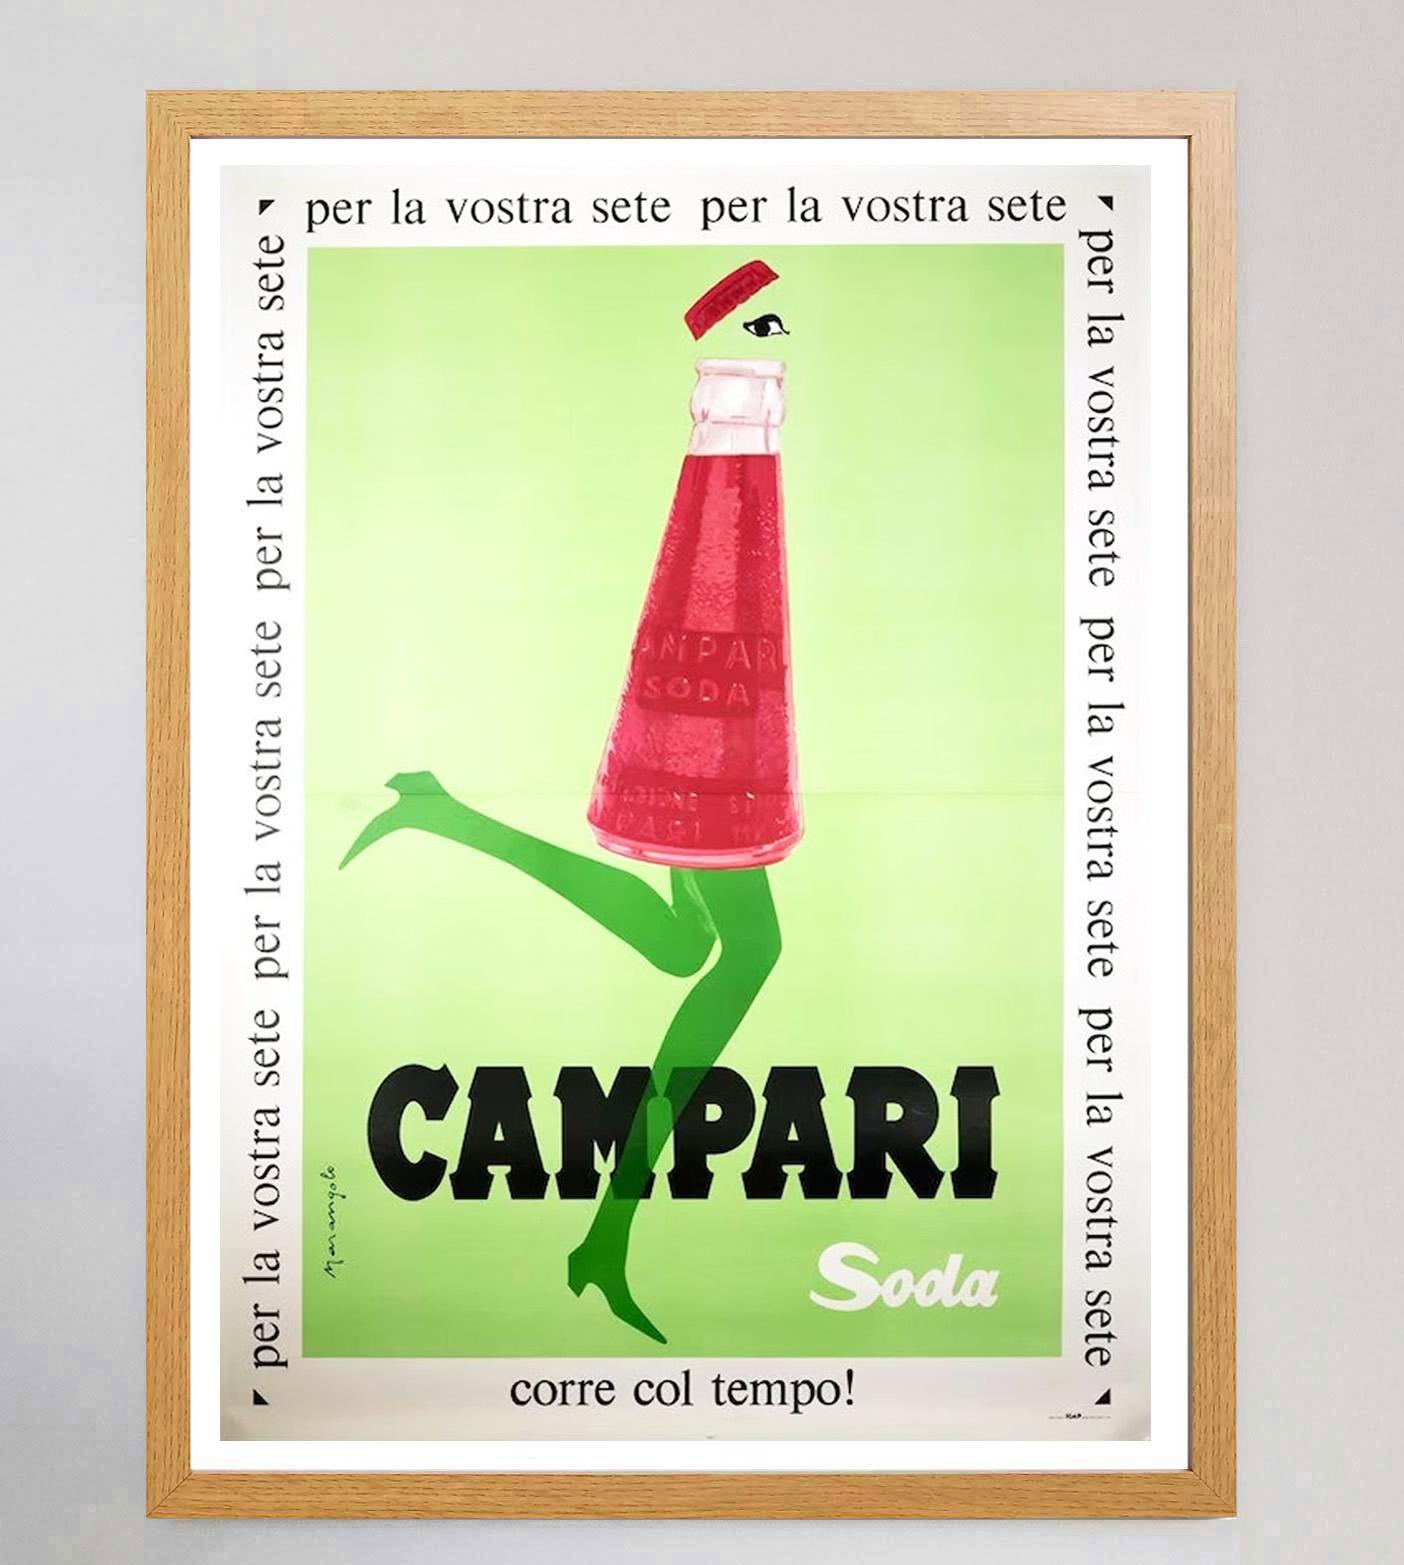 Italian 1968 Campari Soda - Marangolo Original Vintage Poster For Sale